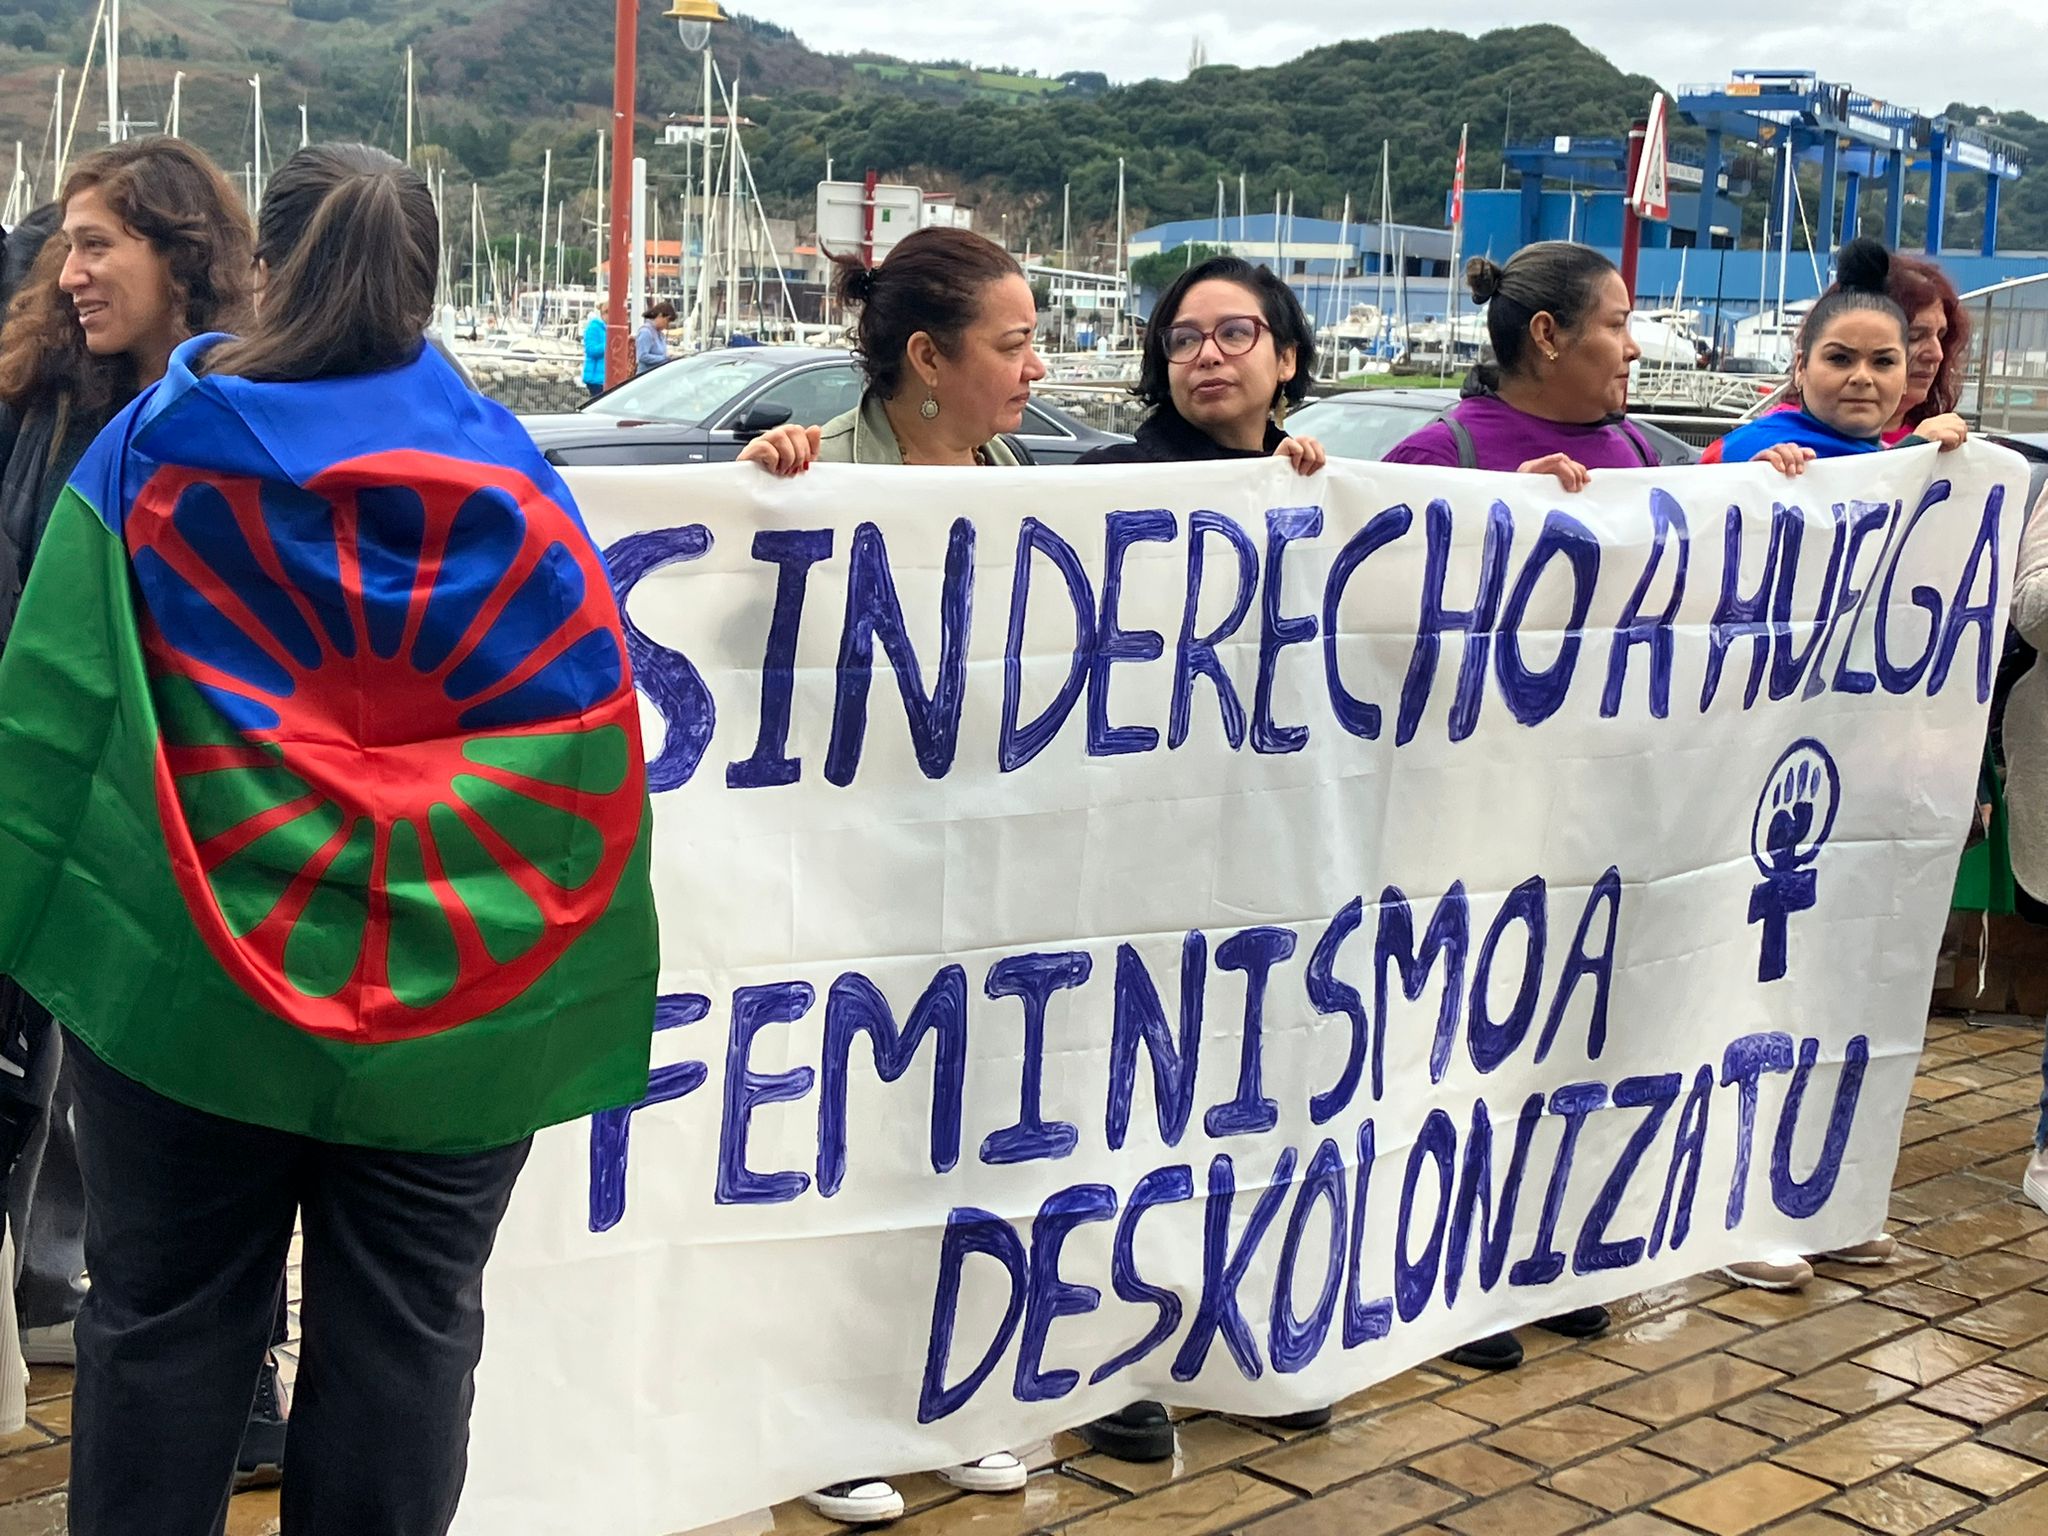 Feminista arrazializatuek hurrengo pankarta daramate: Sin derecho a huelga. Feminismoa deskolonizatu.